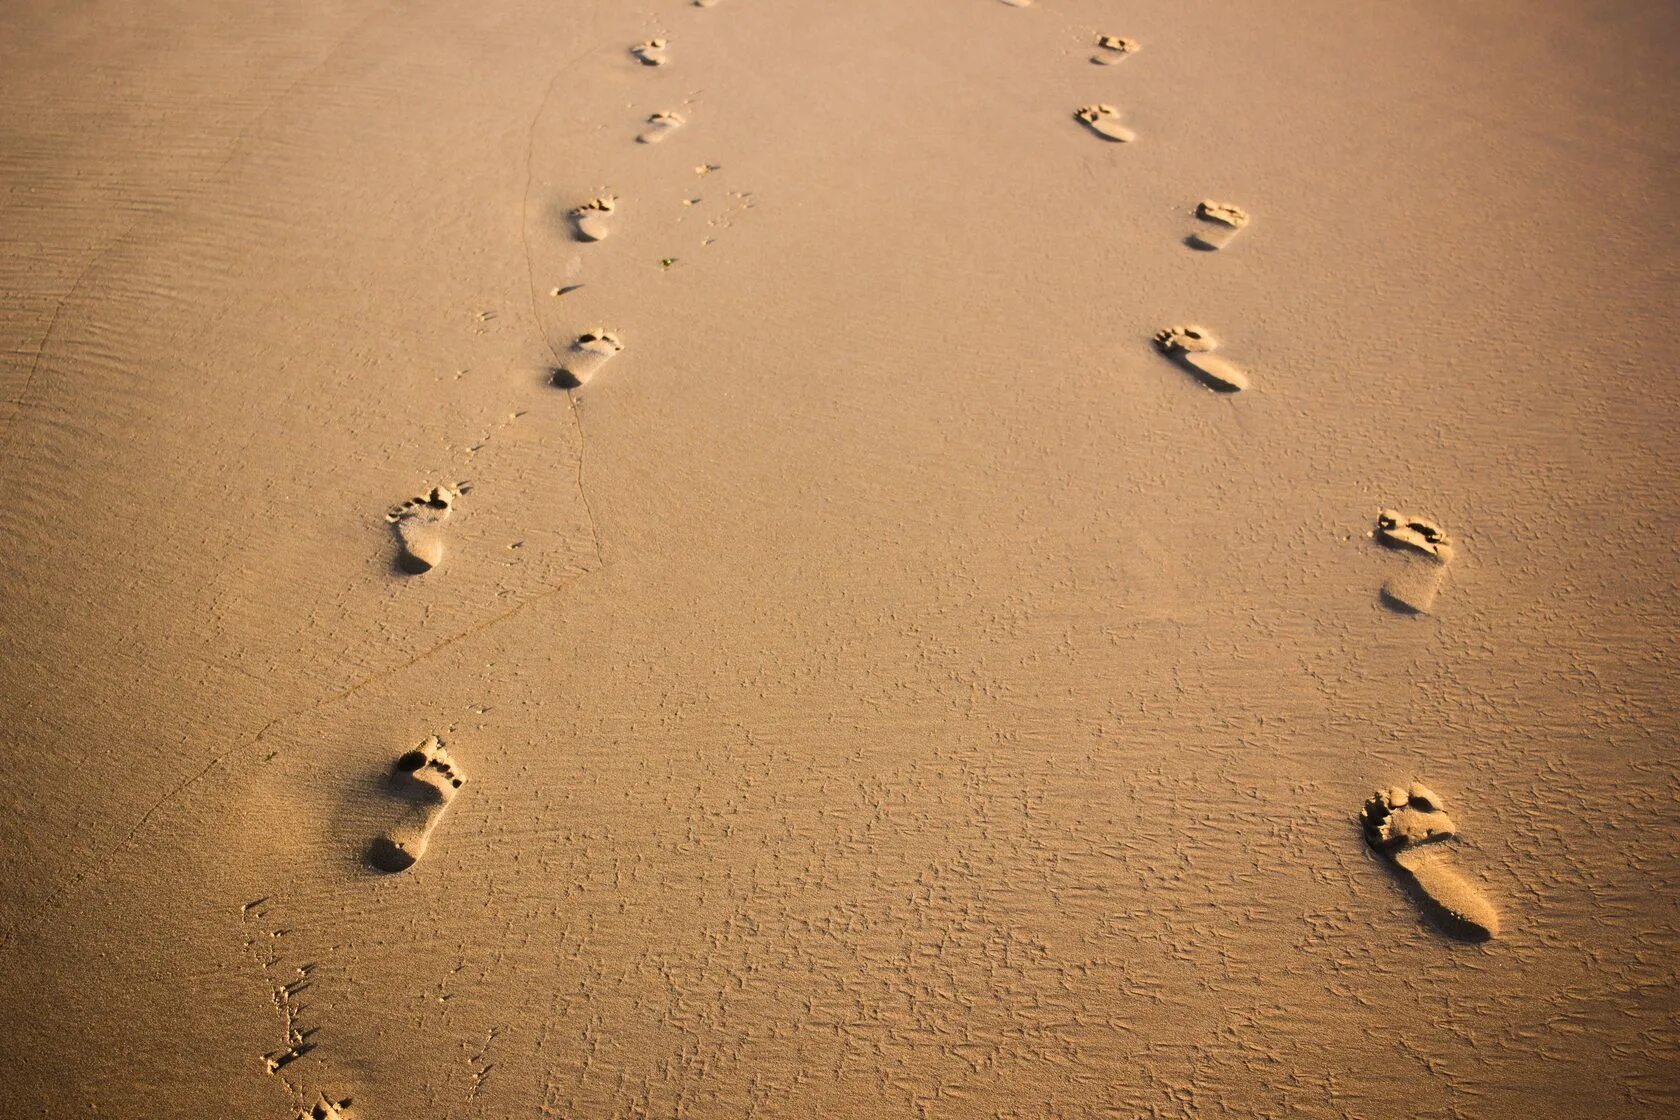 Текст следы на песке. Следы собаки на песке. Следы ног и собачьи на песке. След бегущей собаки на песке. Пустыня пляж.